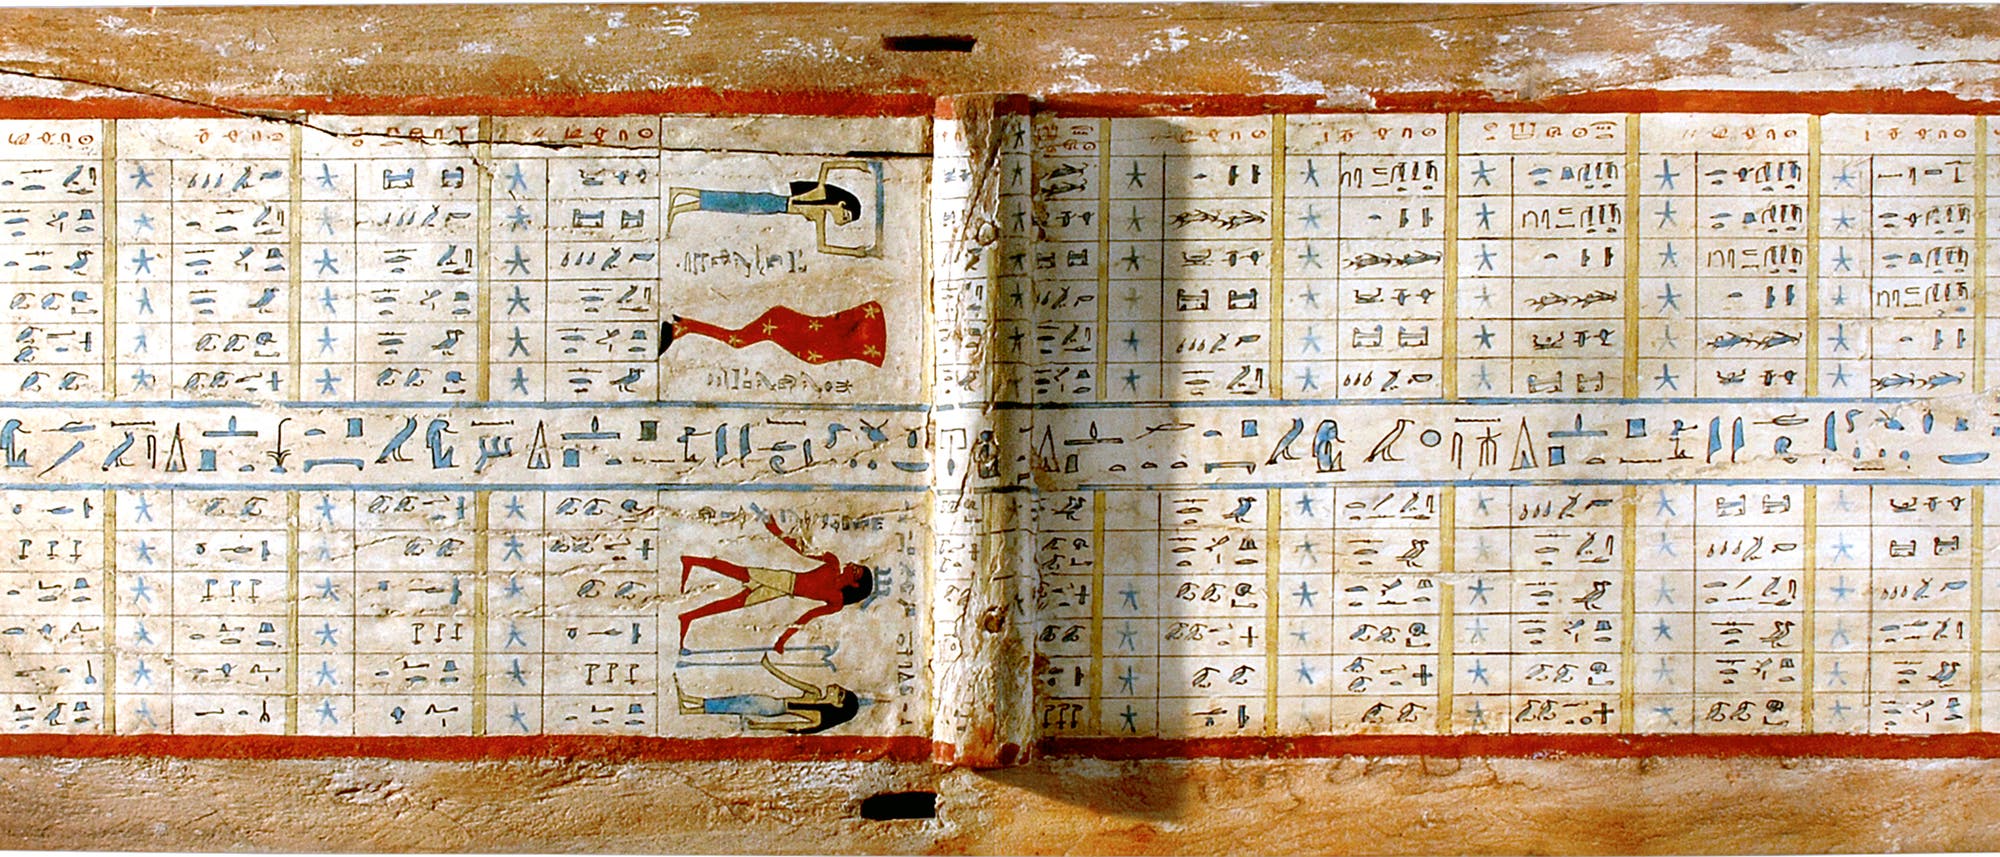 Der 4000 Jahre alte Sarg des Idi aus dem ägyptischen Assiut enthält auf der Innenseite des Deckels eine astronomische Tafel. In den einzelnen Feldern der Tabelle stehen in Hieroglyphenschrift die Namen von Sternen, die sich in einem diagonal verlaufenden Muster wiederholen. 